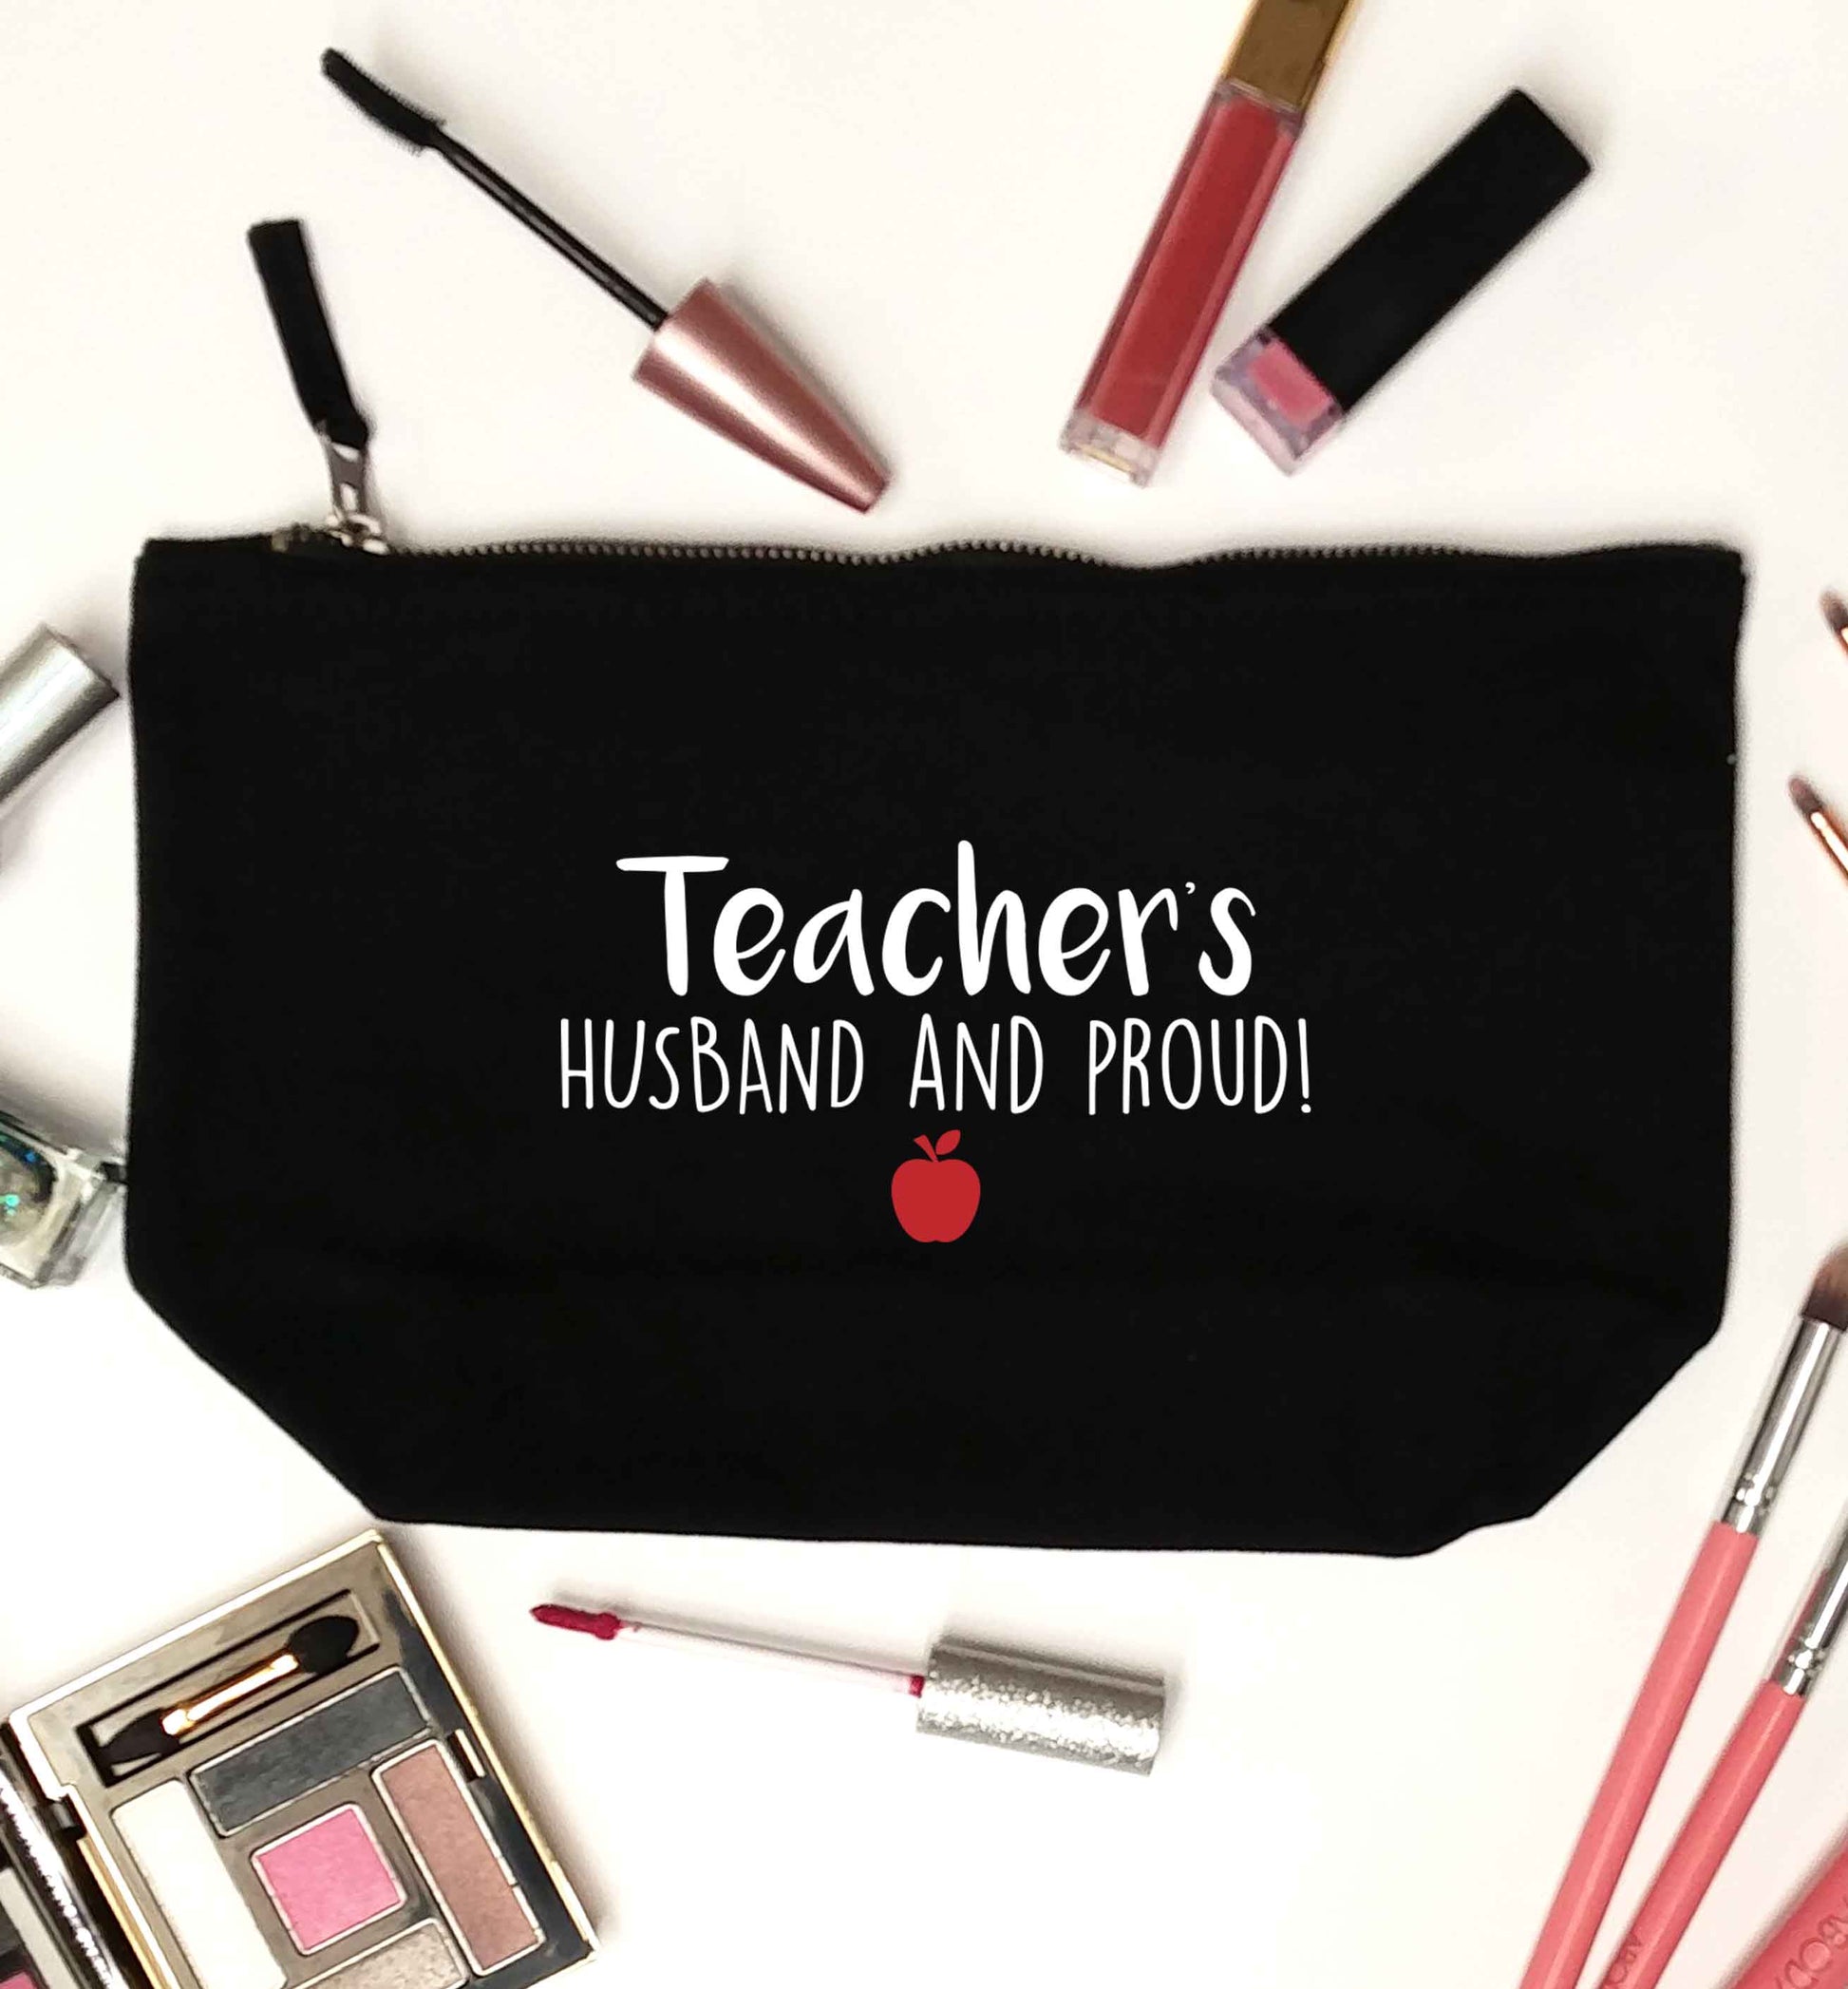 Teachers husband and proud black makeup bag